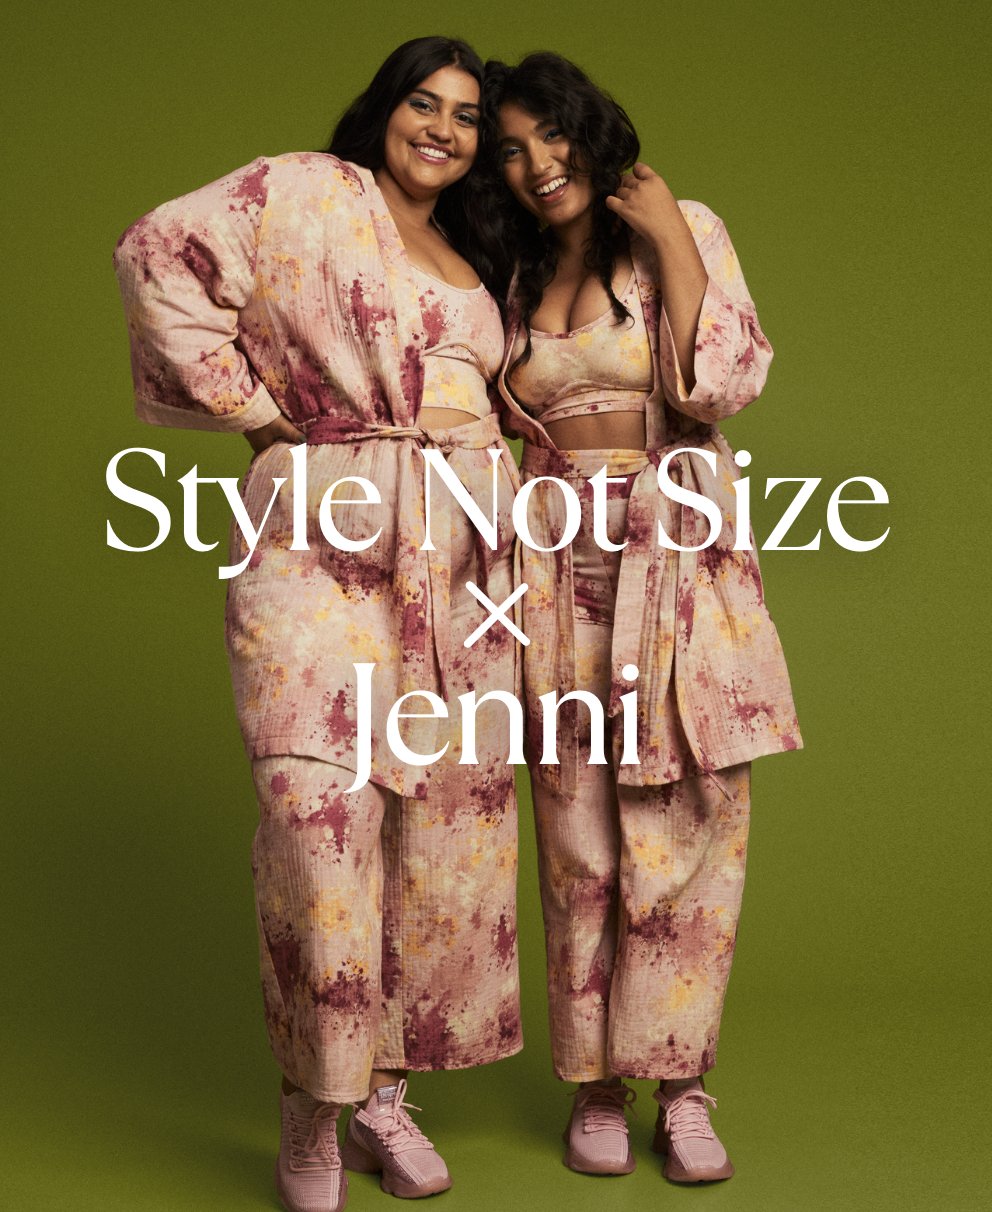 Style Not Size x Jenni